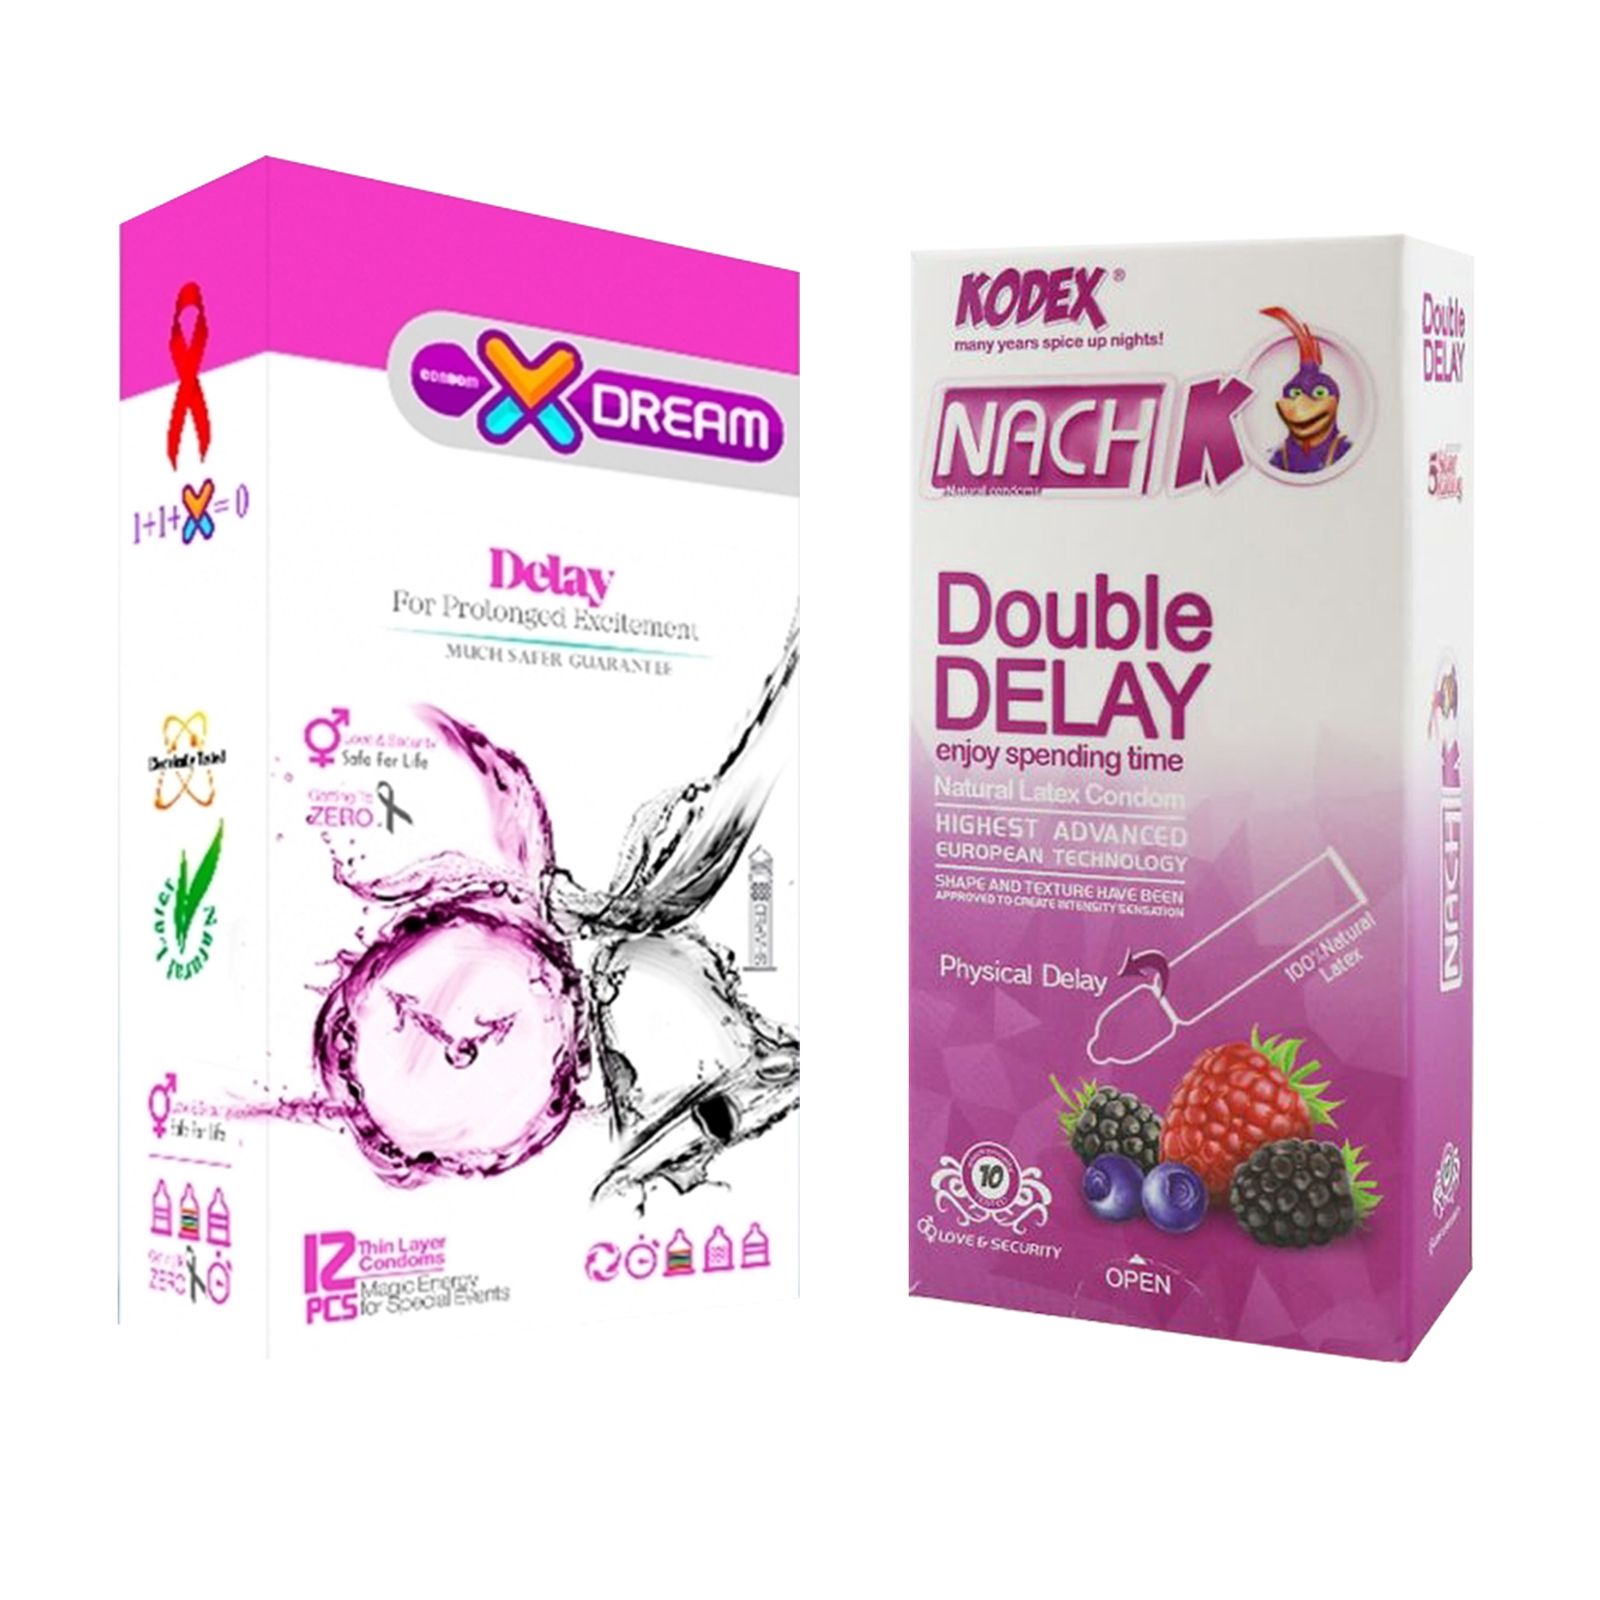 کاندوم ایکس دریم مدل Delay بسته 12 عددی به همراه کاندوم تاخیری کدکس مدل Double Delay بسته 10 عددی -  - 1